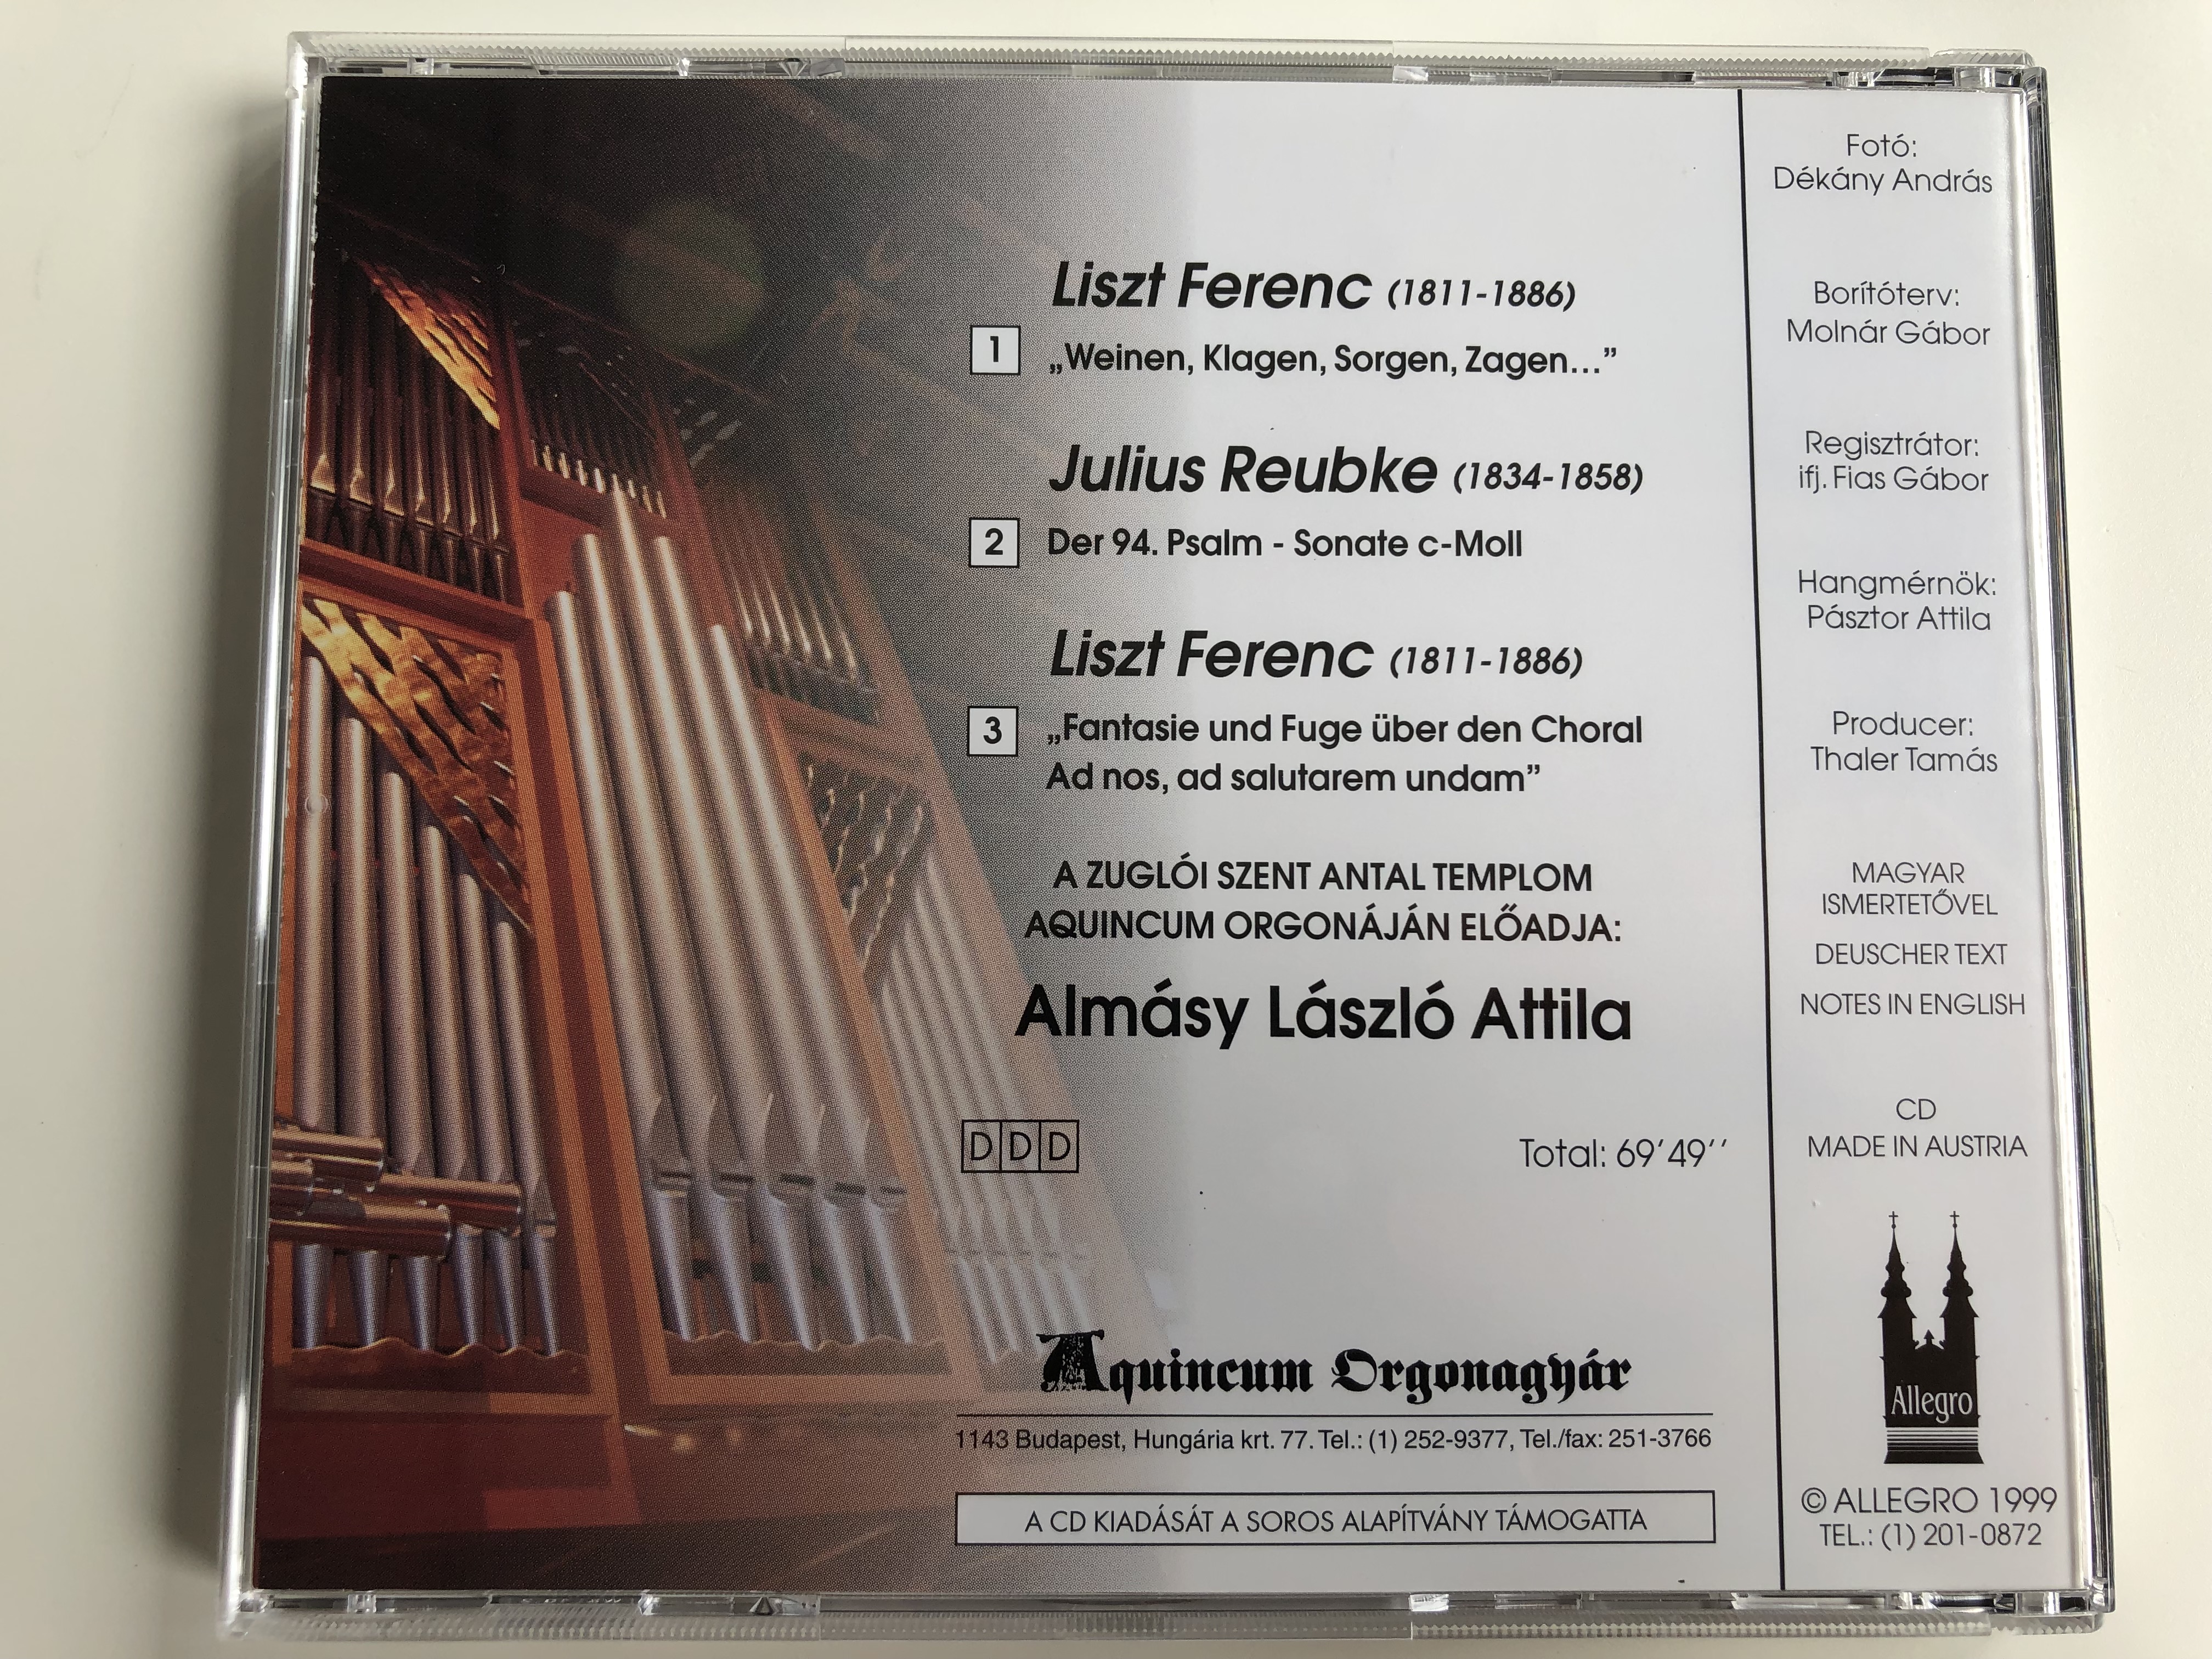 liszt-weinen-klagen-sorgen-zagen-ad-nos-ad-salutarem-undam-reubke-der-94.-psalm-sonate-laszlo-attila-almasy-an-der-aquincum-orgel-zu-st.-anton-budapest-allegro-audio-cd-1999-mza-03-9-.jpg